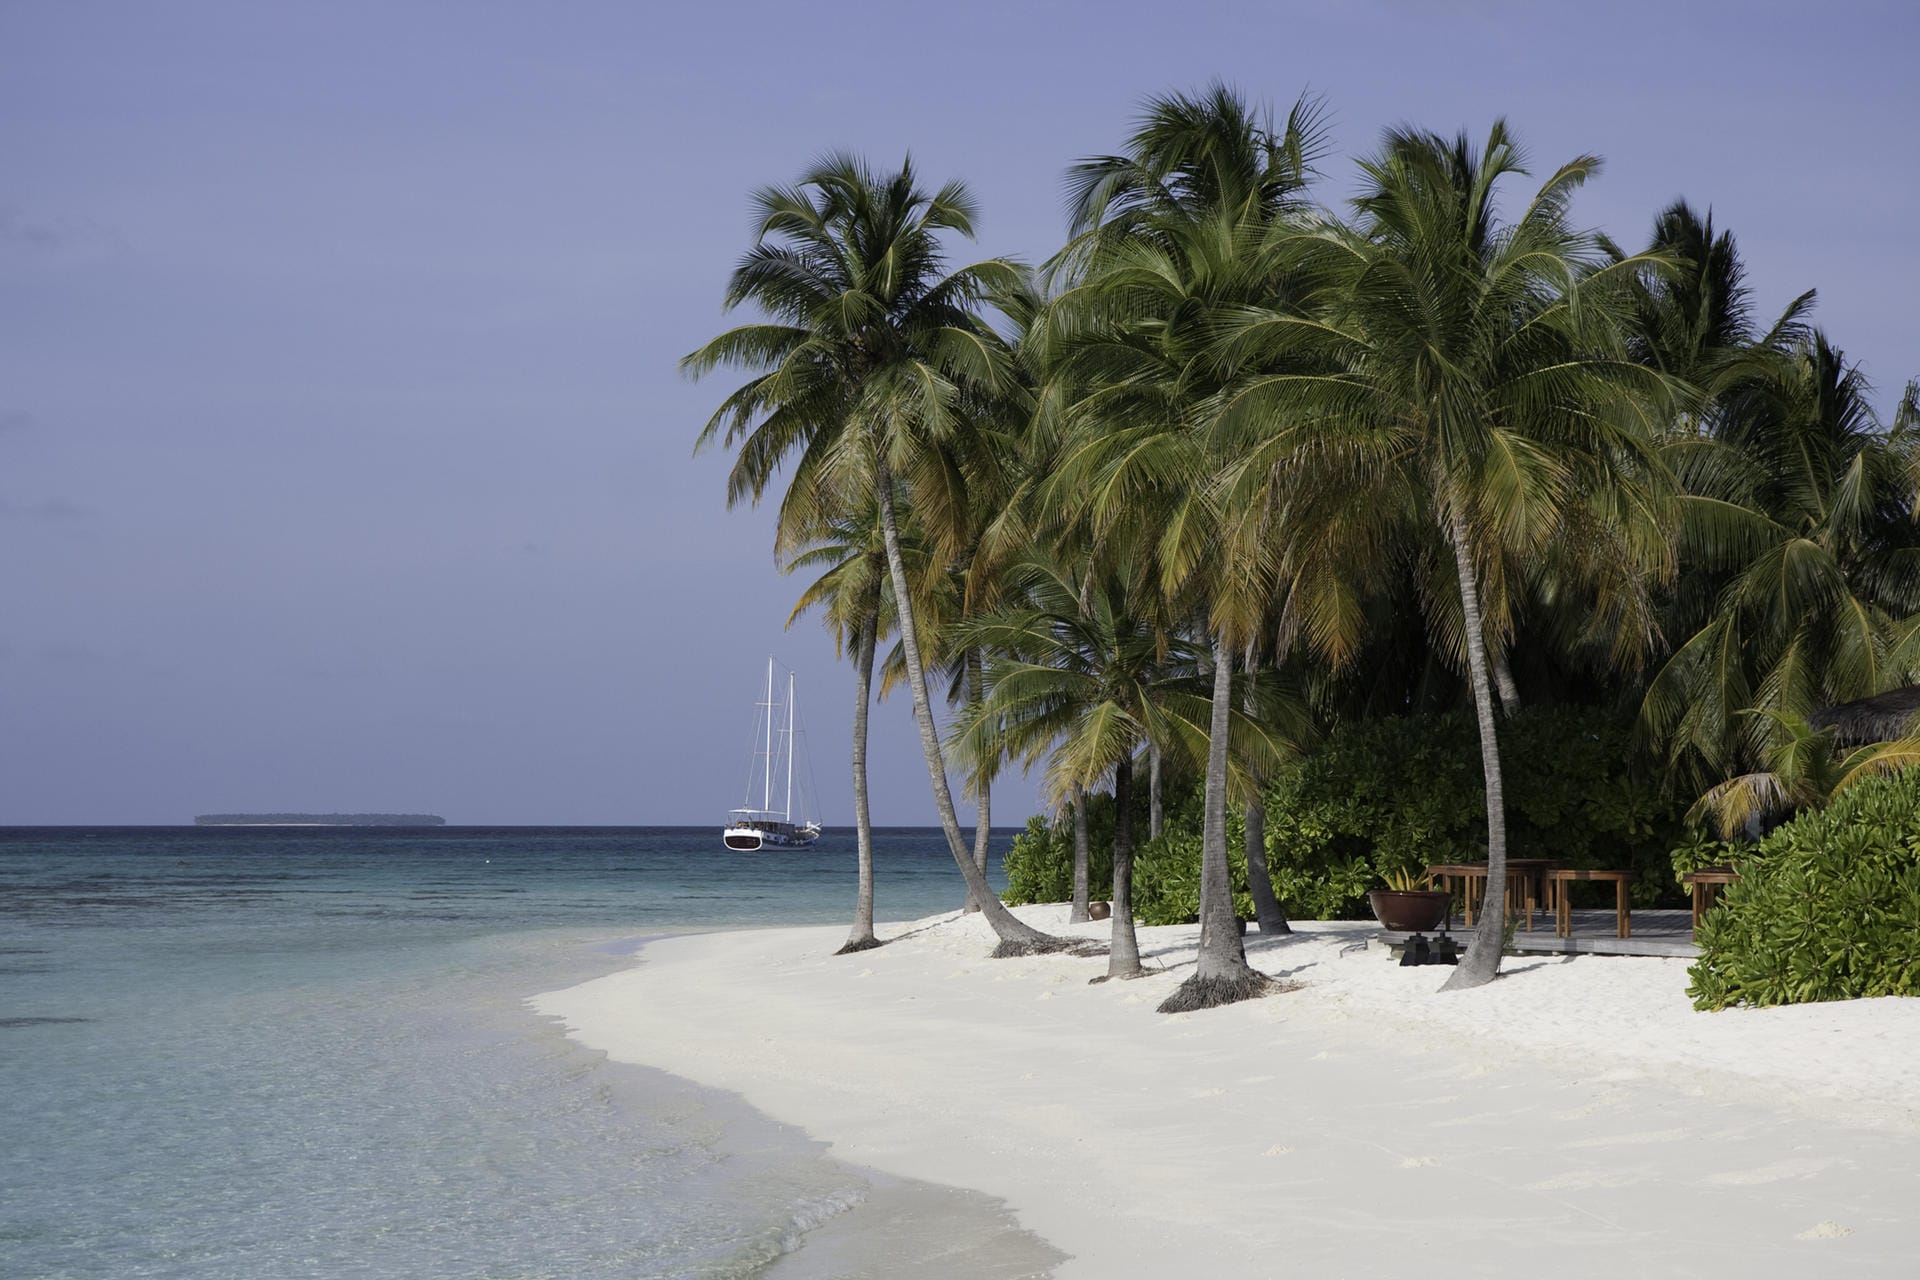 Mirihi Island/Malediven: Klein, kleiner, Mirihi Island. Die Mini Insel ist lediglich 350 mal 50 Meter groß, trumpft aber mit einem unvergleichlich schönen Sandstrand und einem eigenen Schiffswrack für Taucher auf.